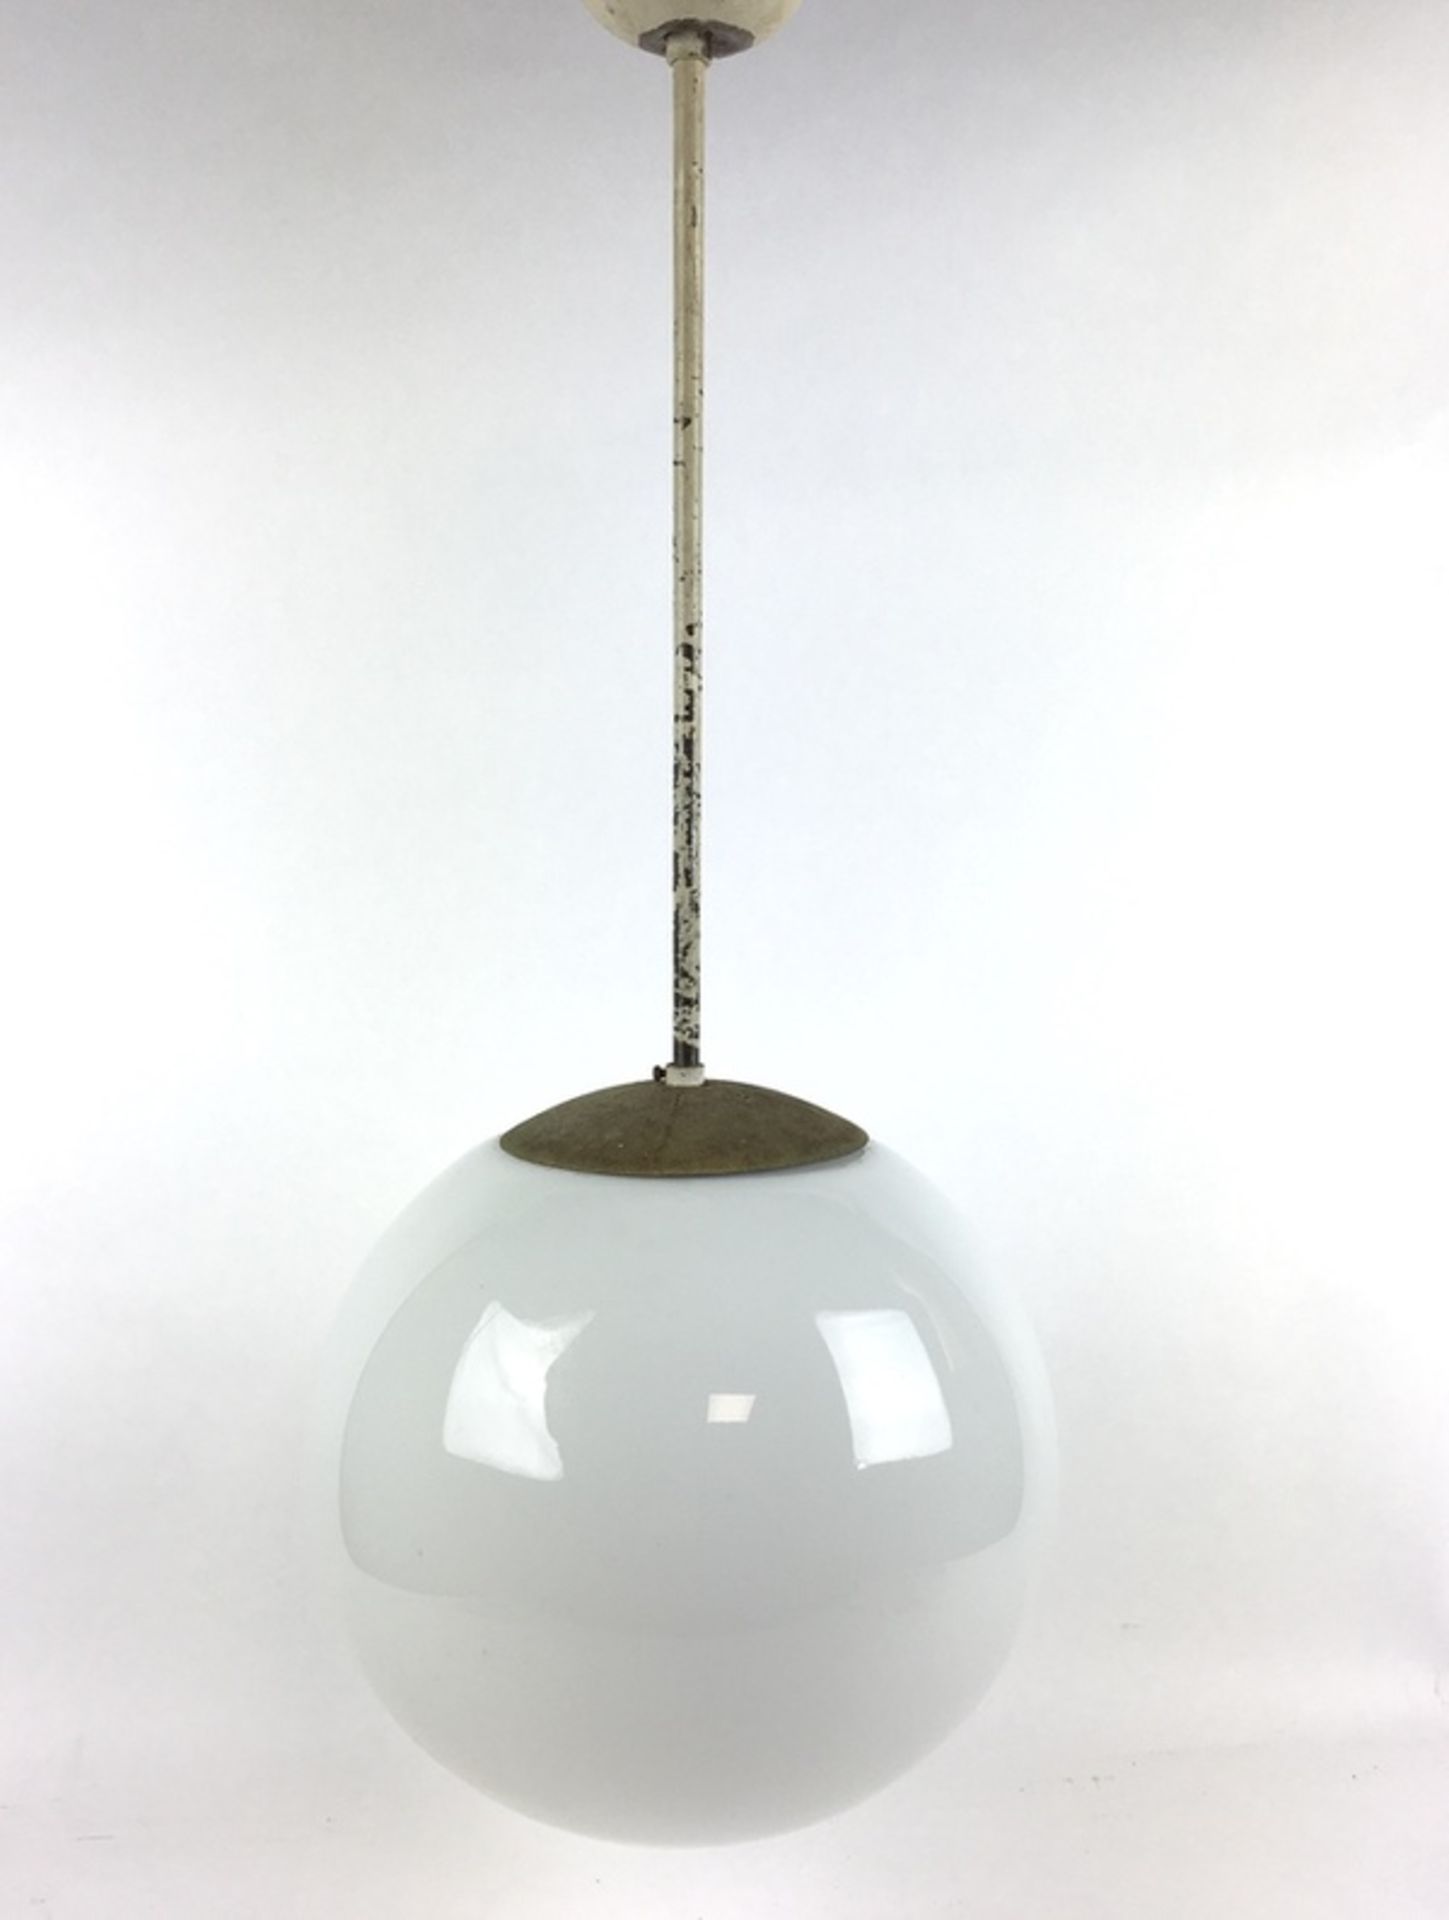 (Curiosa) HanglampGispen stijl school lamp met ronde melkglazen bol, midden 20e eeuw. Conditie: